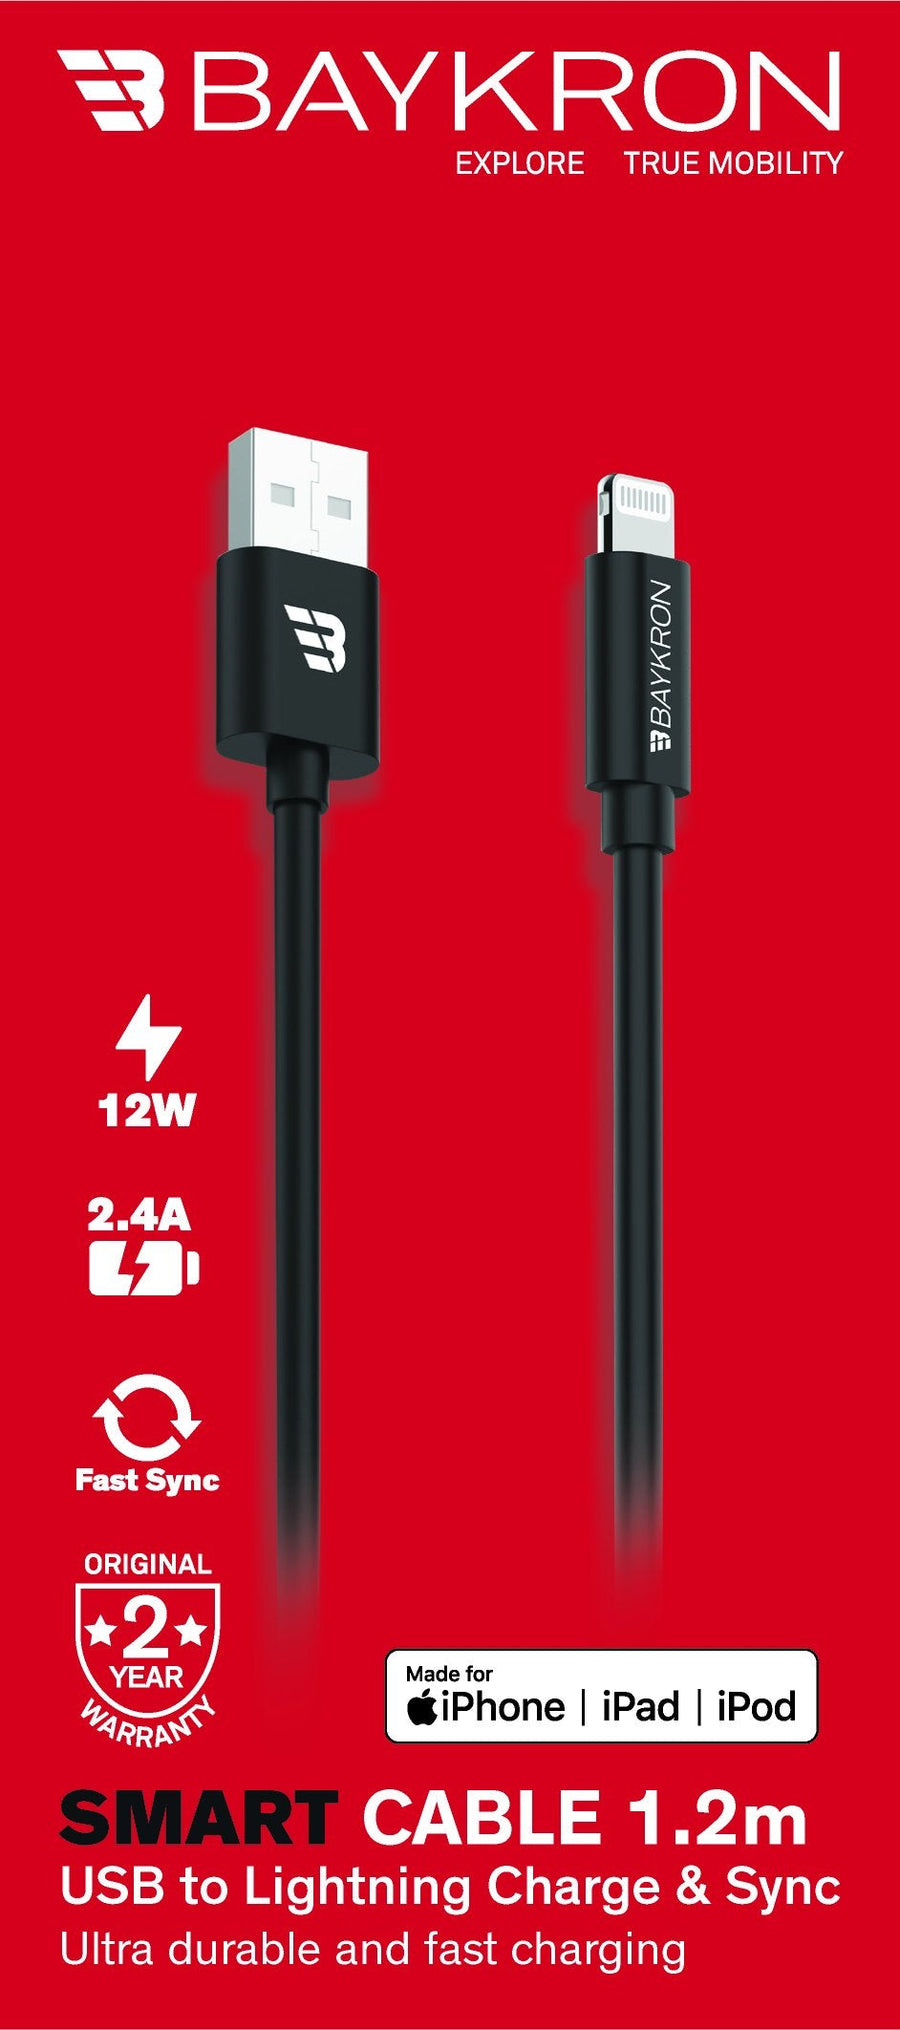 كابل بايكرون الذكي 1.2 متر معتمد من MFI USB-A إلى Lightning ، 2.4A